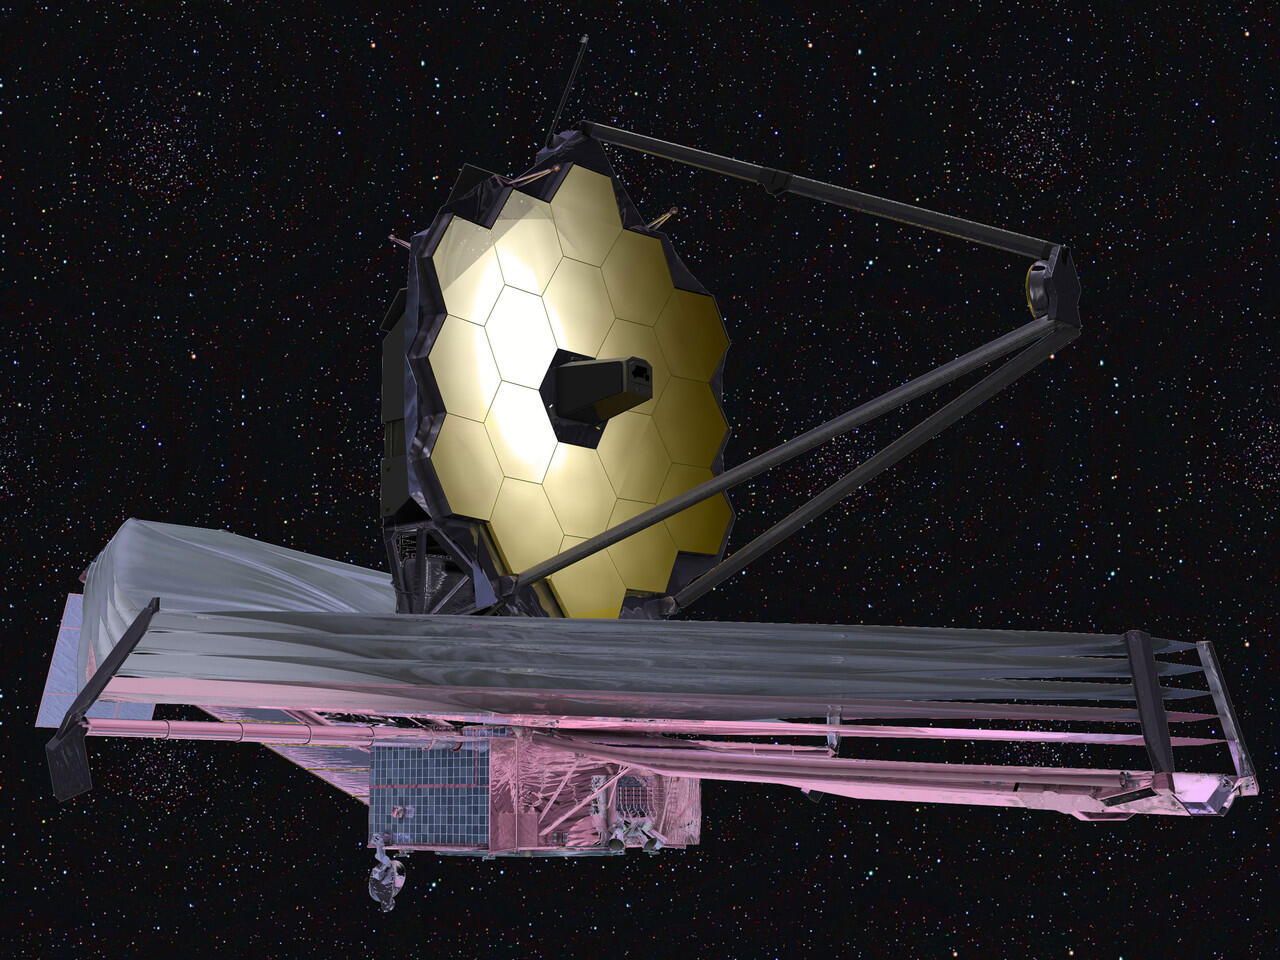 Lihat Teleskop terbaru NASA yuk gan! James Webb Space Telescope